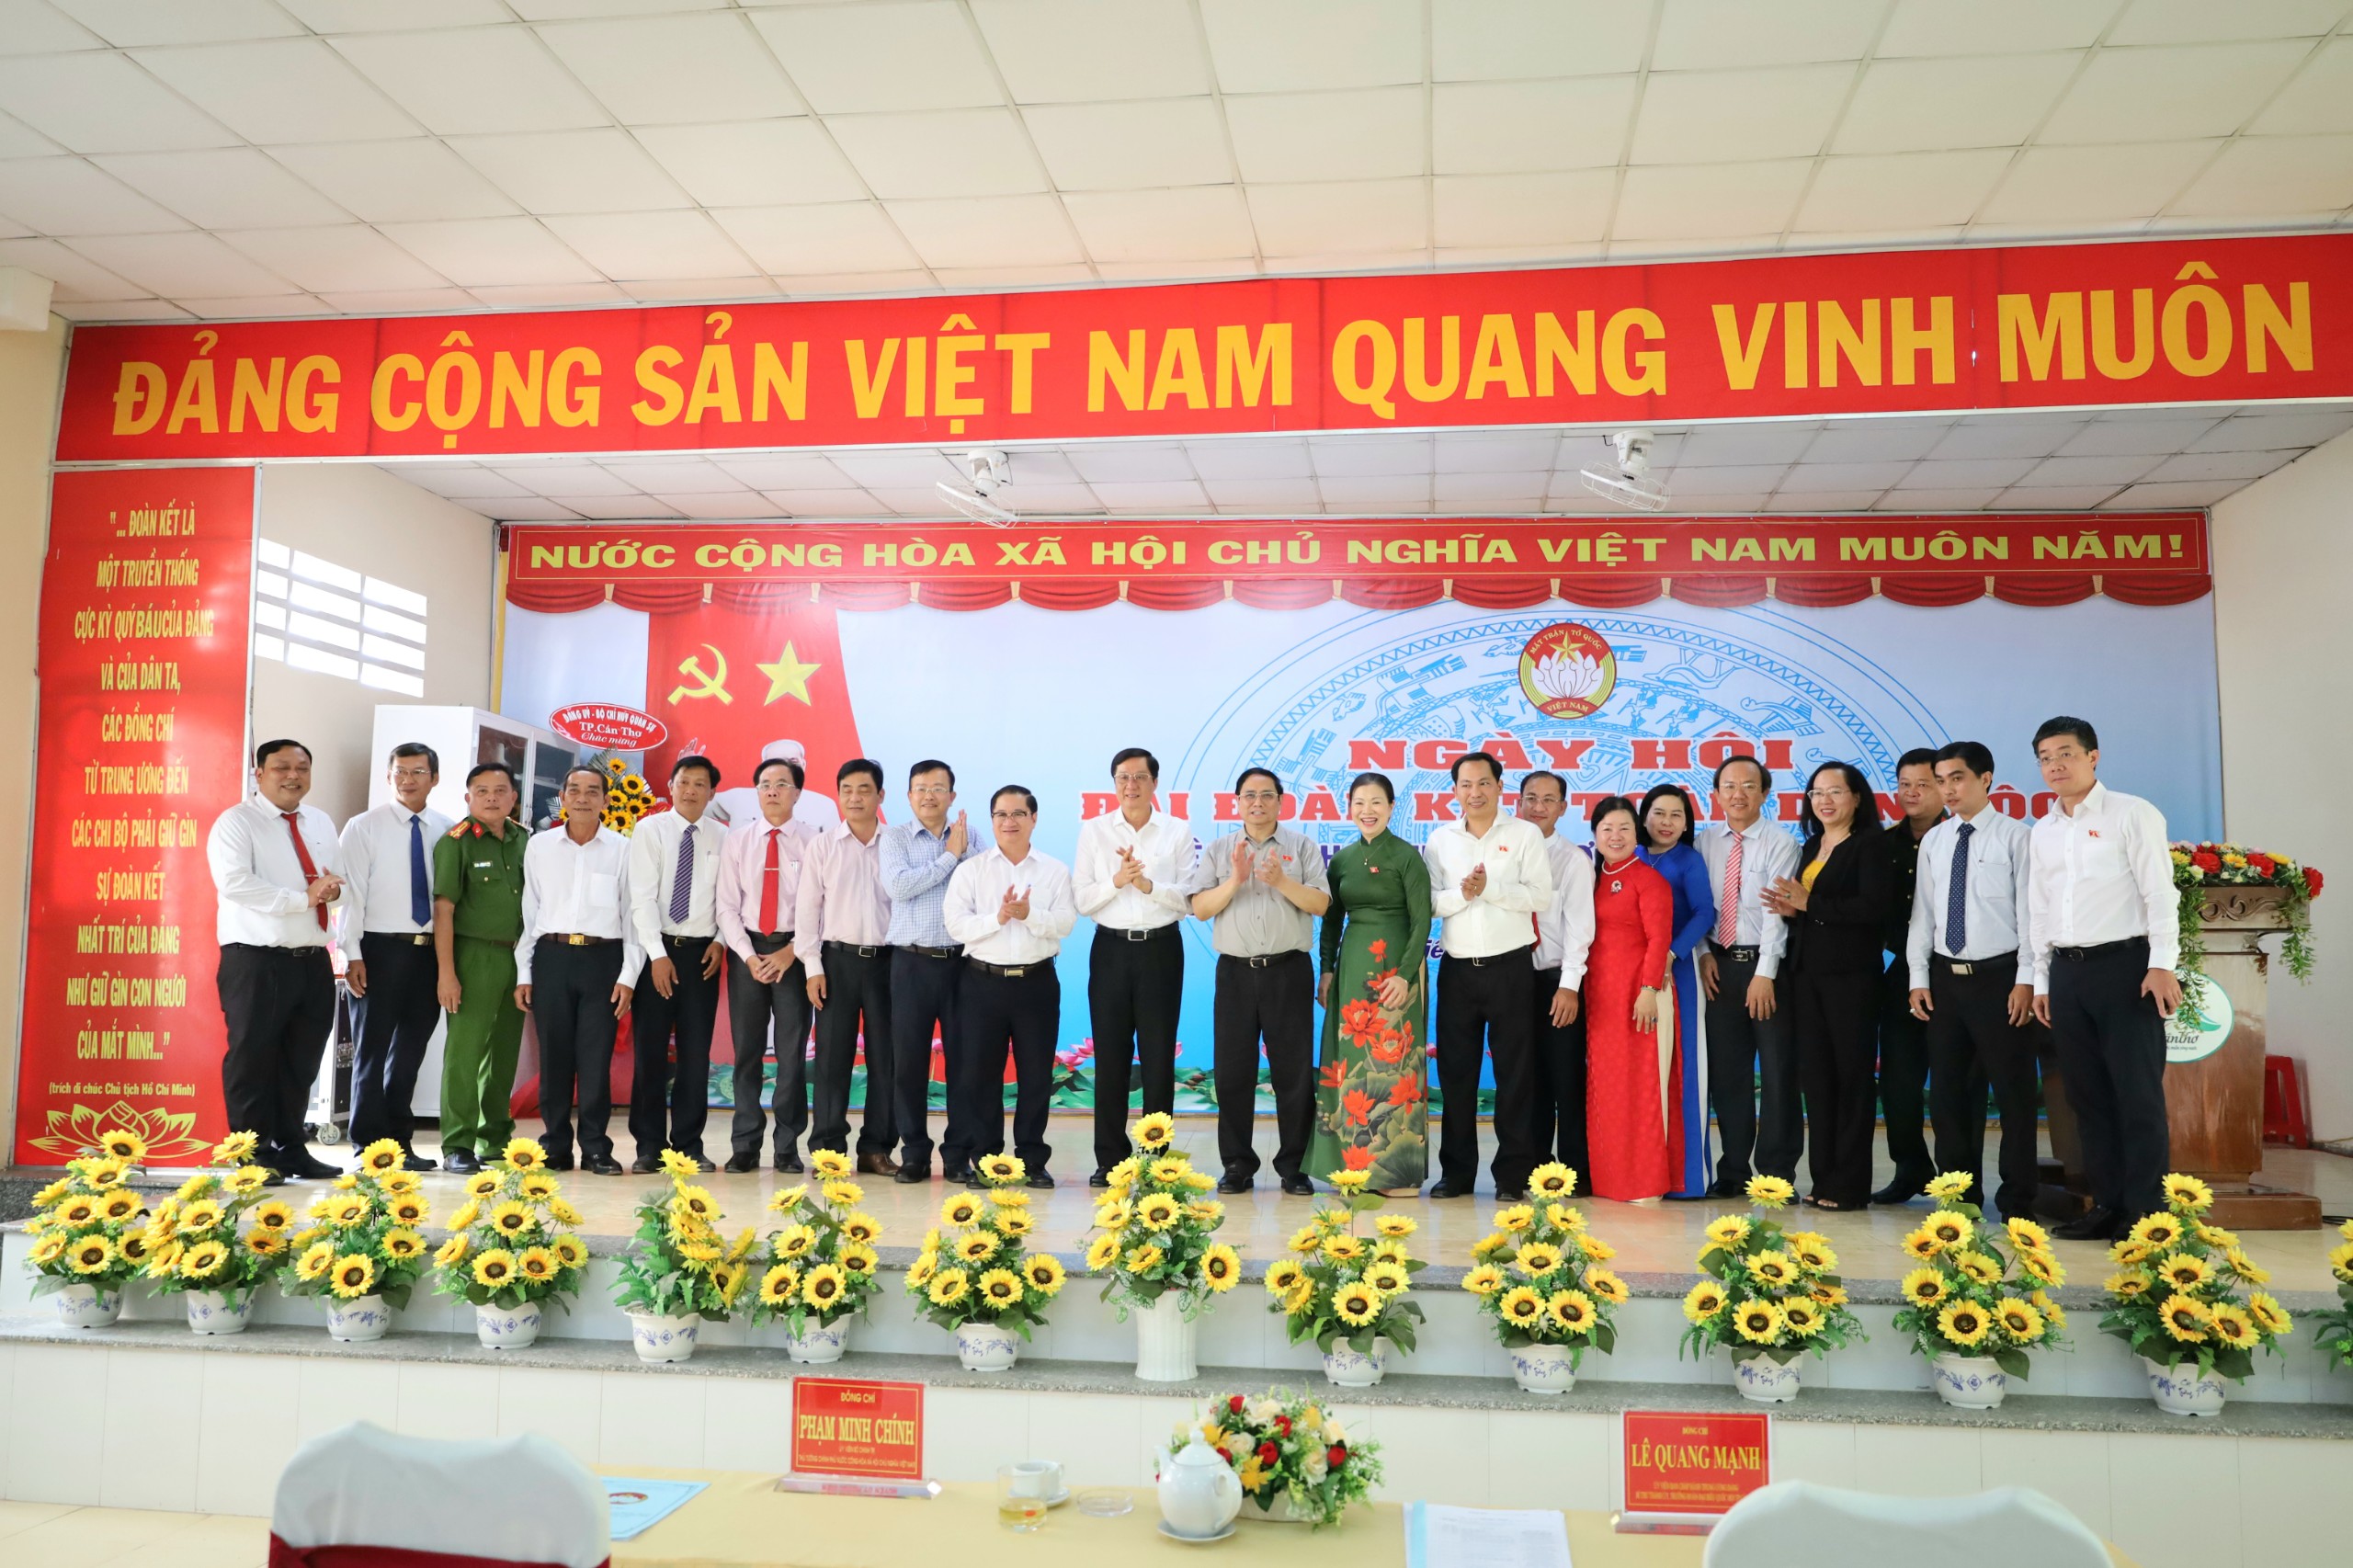 Ông Phạm Minh Chính - Ủy viên Bộ Chính trị, Thủ tướng Chính phủ chụp hình lưu niệm cùng các đại biểu tại ngày hội.